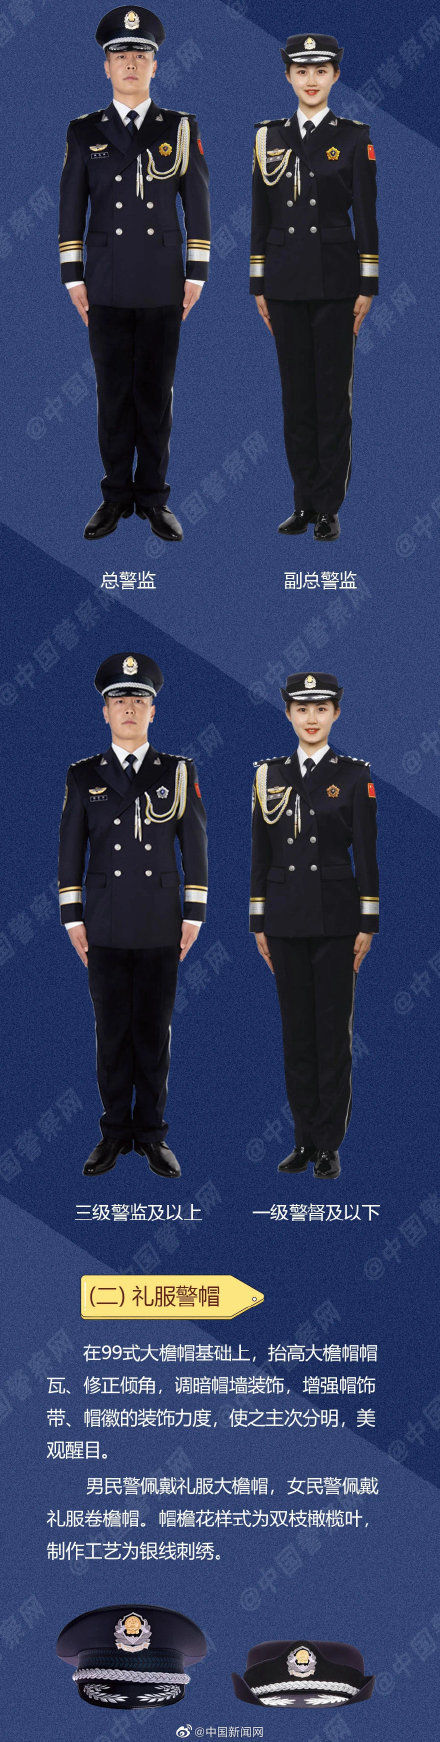 中国人民警察警礼服正式列装